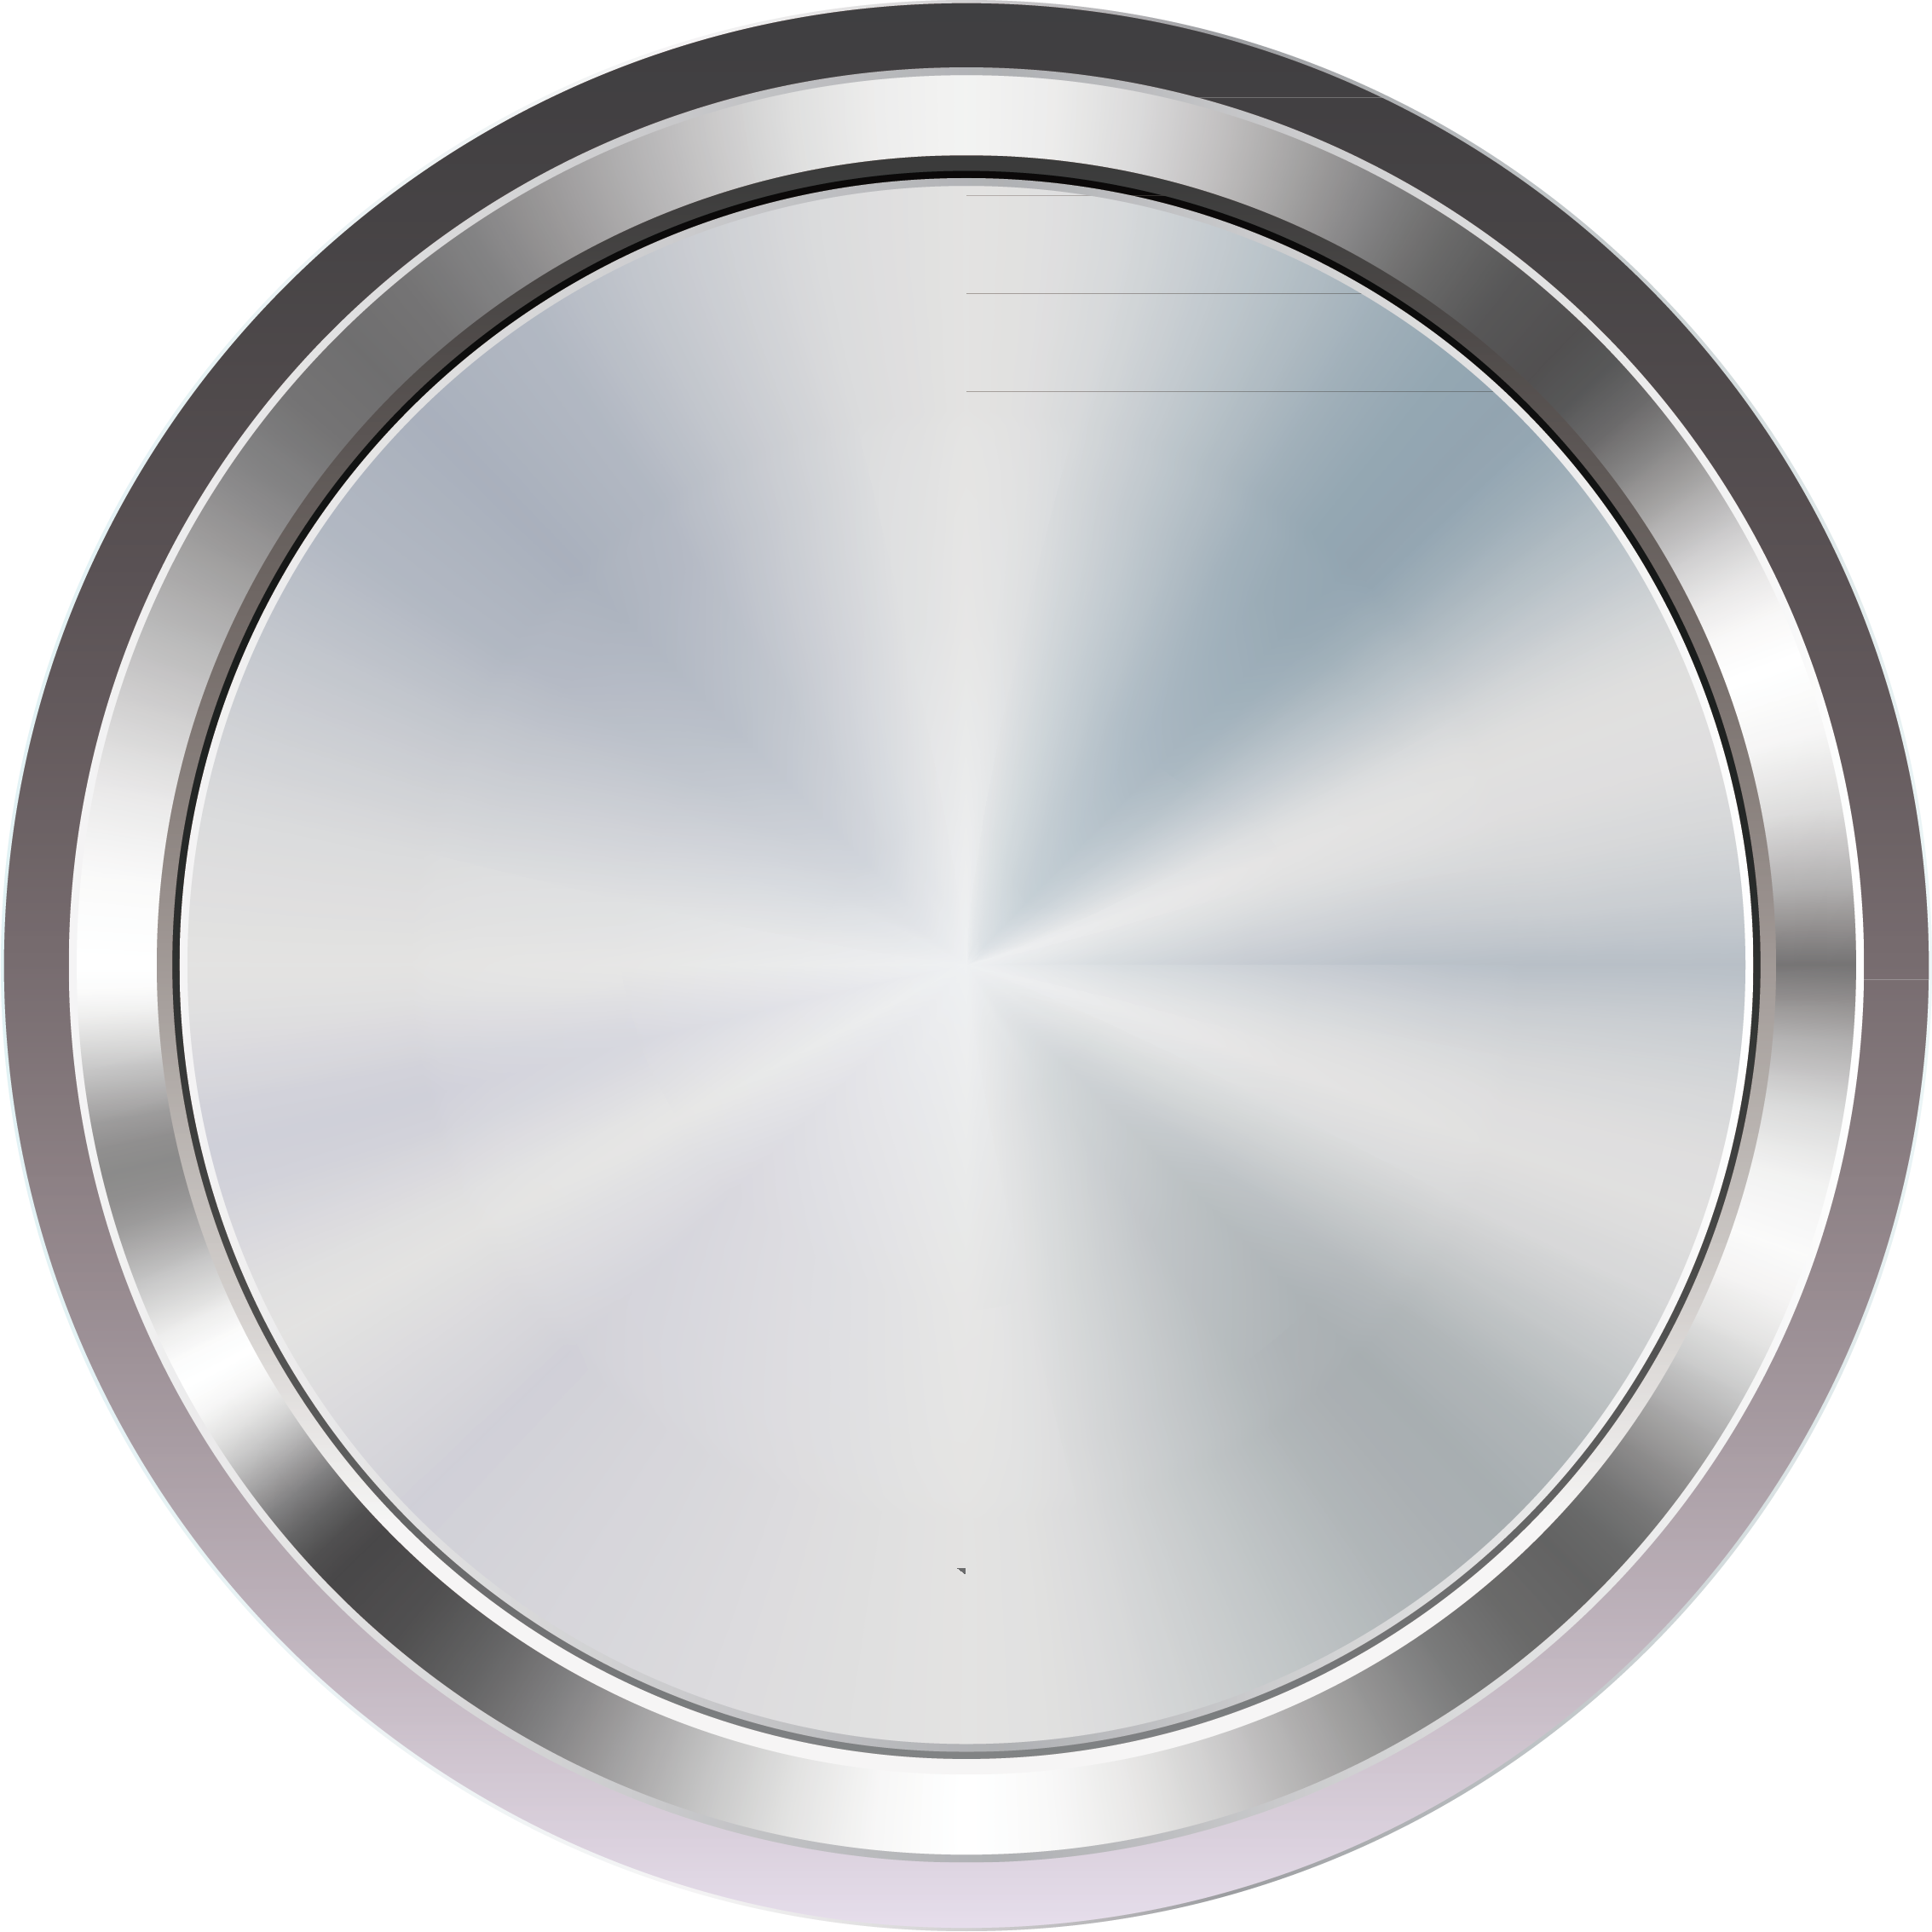 Кнопка PNG изображение с прозрачным фоном